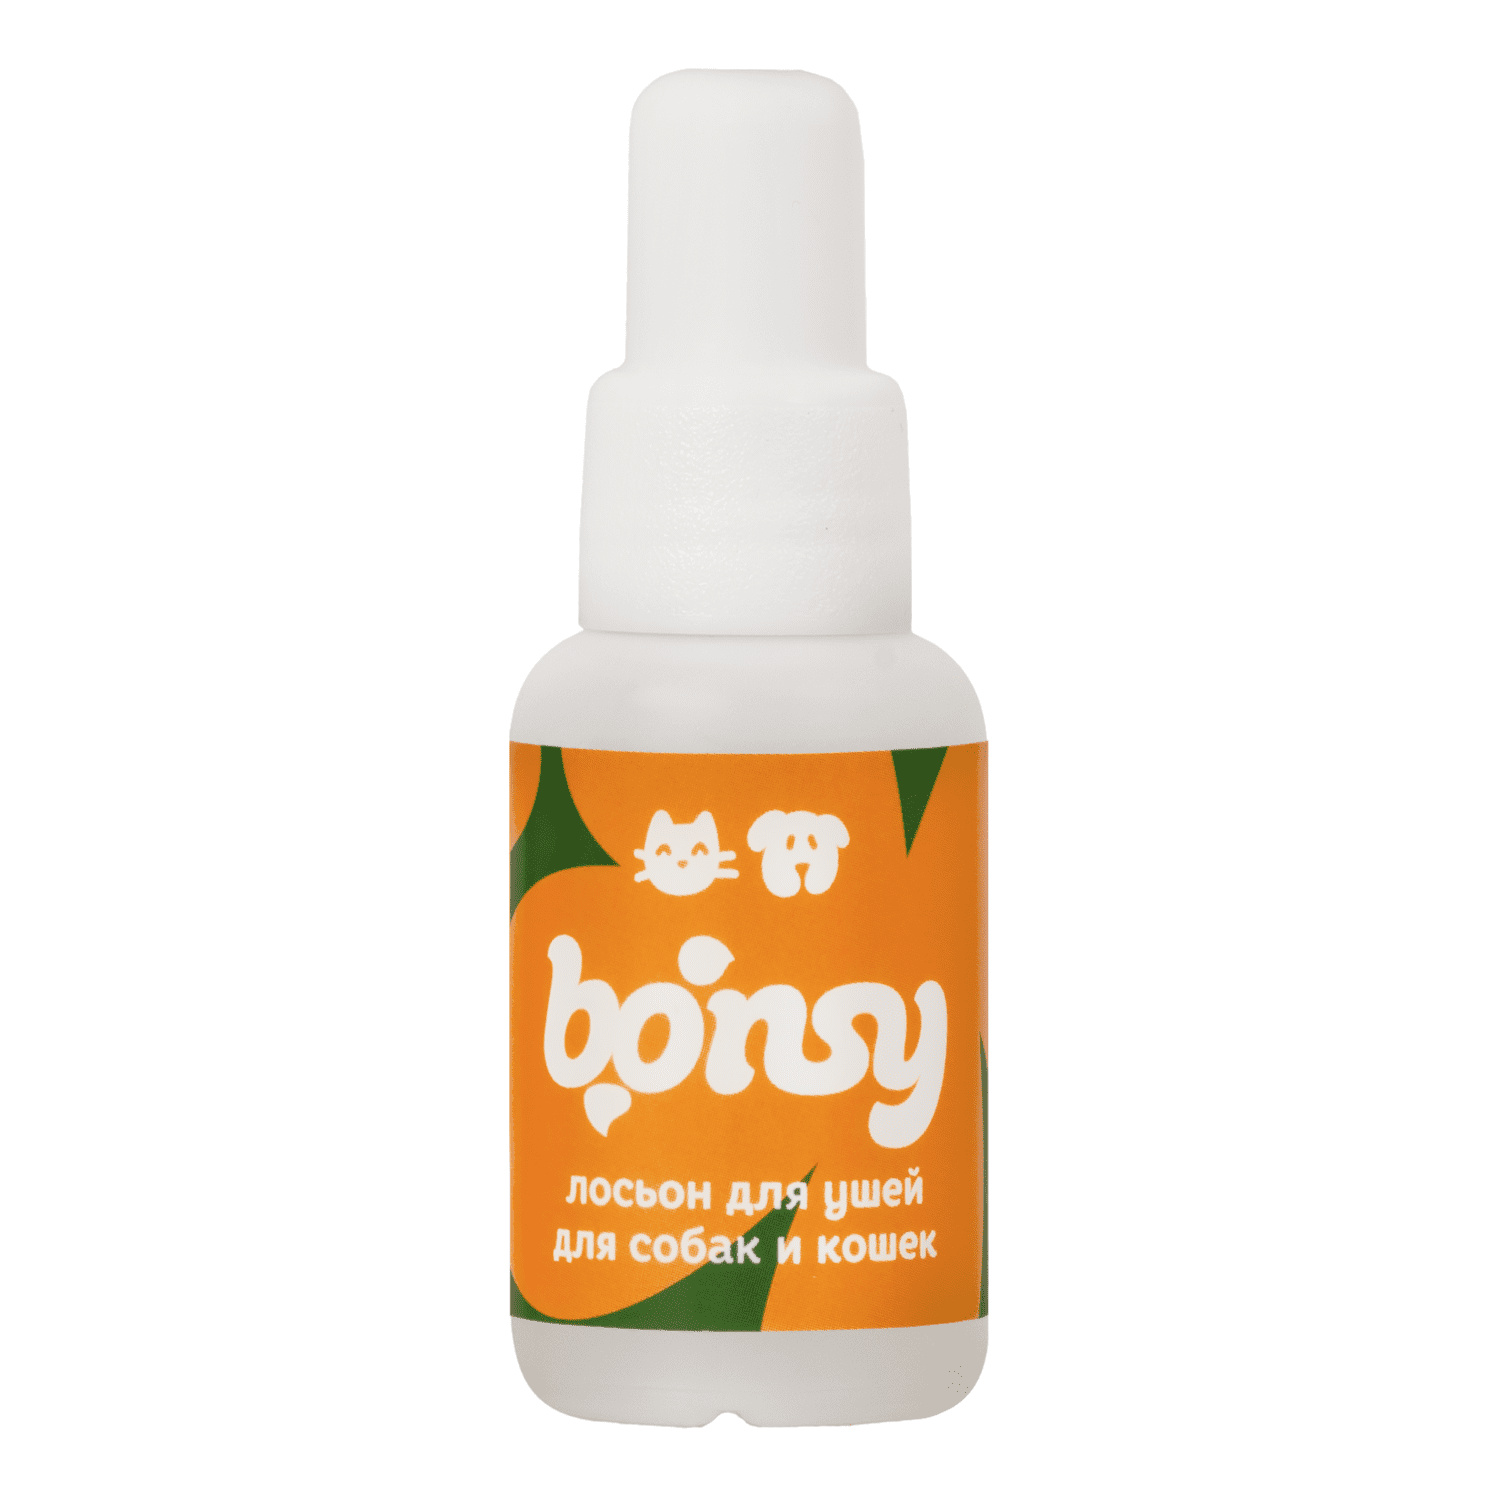 Bonsy Bonsy лосьон для очистки ушей кошек и собак (30 г)